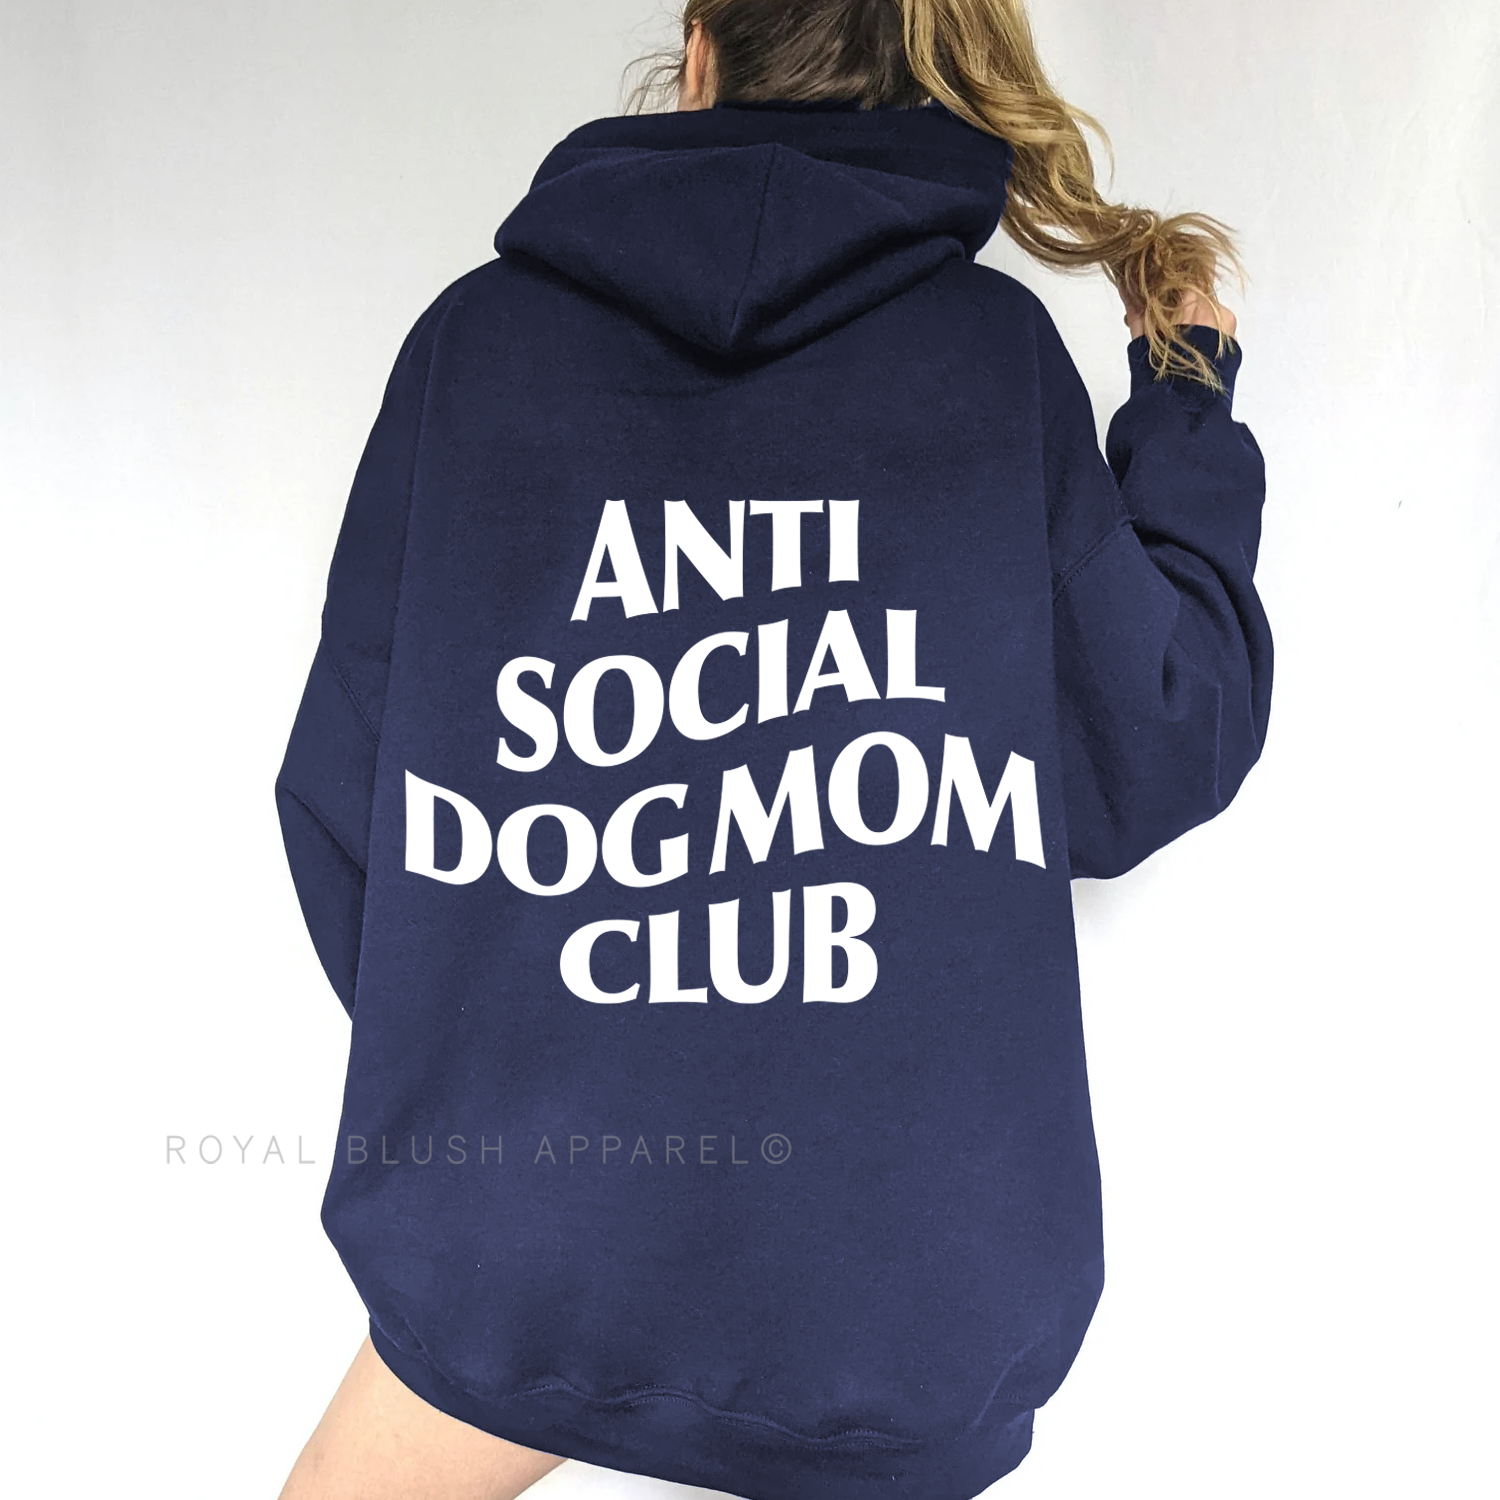 Transfert de sérigraphie anti-social DOG MOM Club